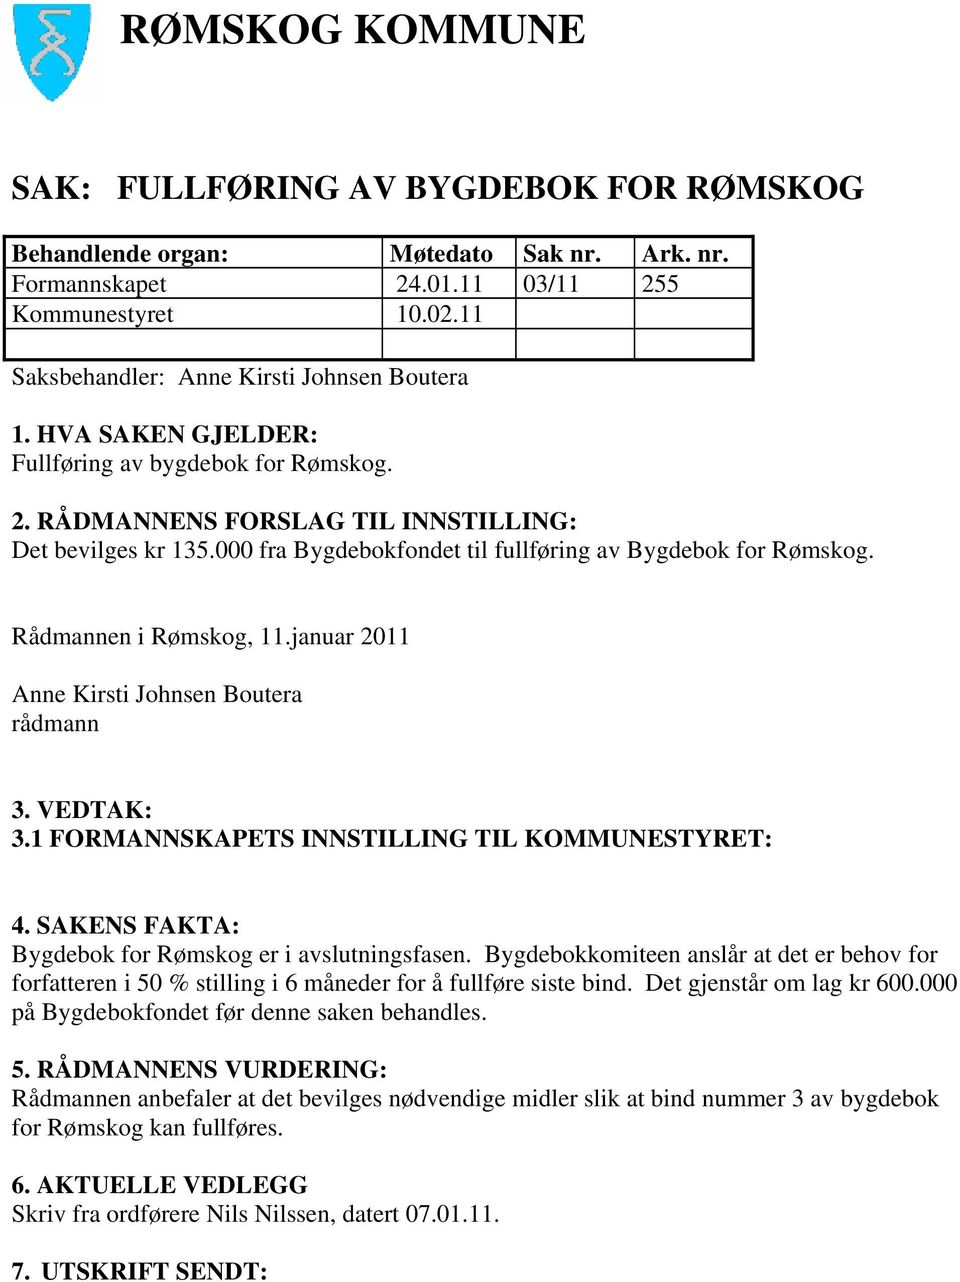 SAKENS FAKTA: Bygdebok for Rømskog er i avslutningsfasen. Bygdebokkomiteen anslår at det er behov for forfatteren i 50 % stilling i 6 måneder for å fullføre siste bind. Det gjenstår om lag kr 600.